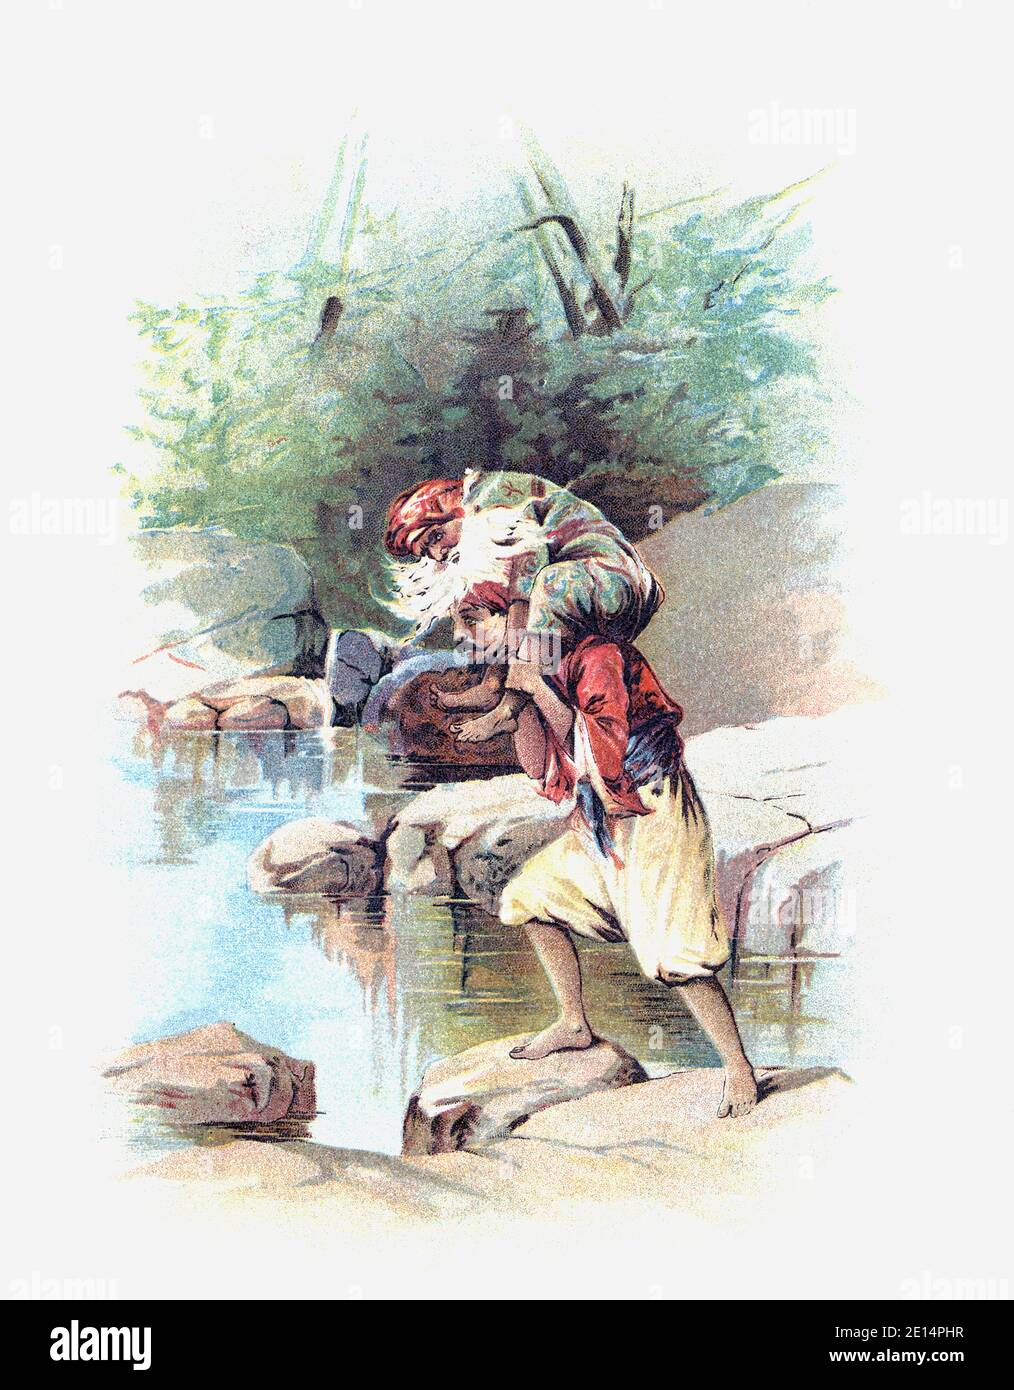 Sinbad le Sailor portant le vieil homme de la mer sur ses épaules. Après une illustration de Francis Brundage dans une édition 1898 des Arabian Nights Entertainments. Banque D'Images